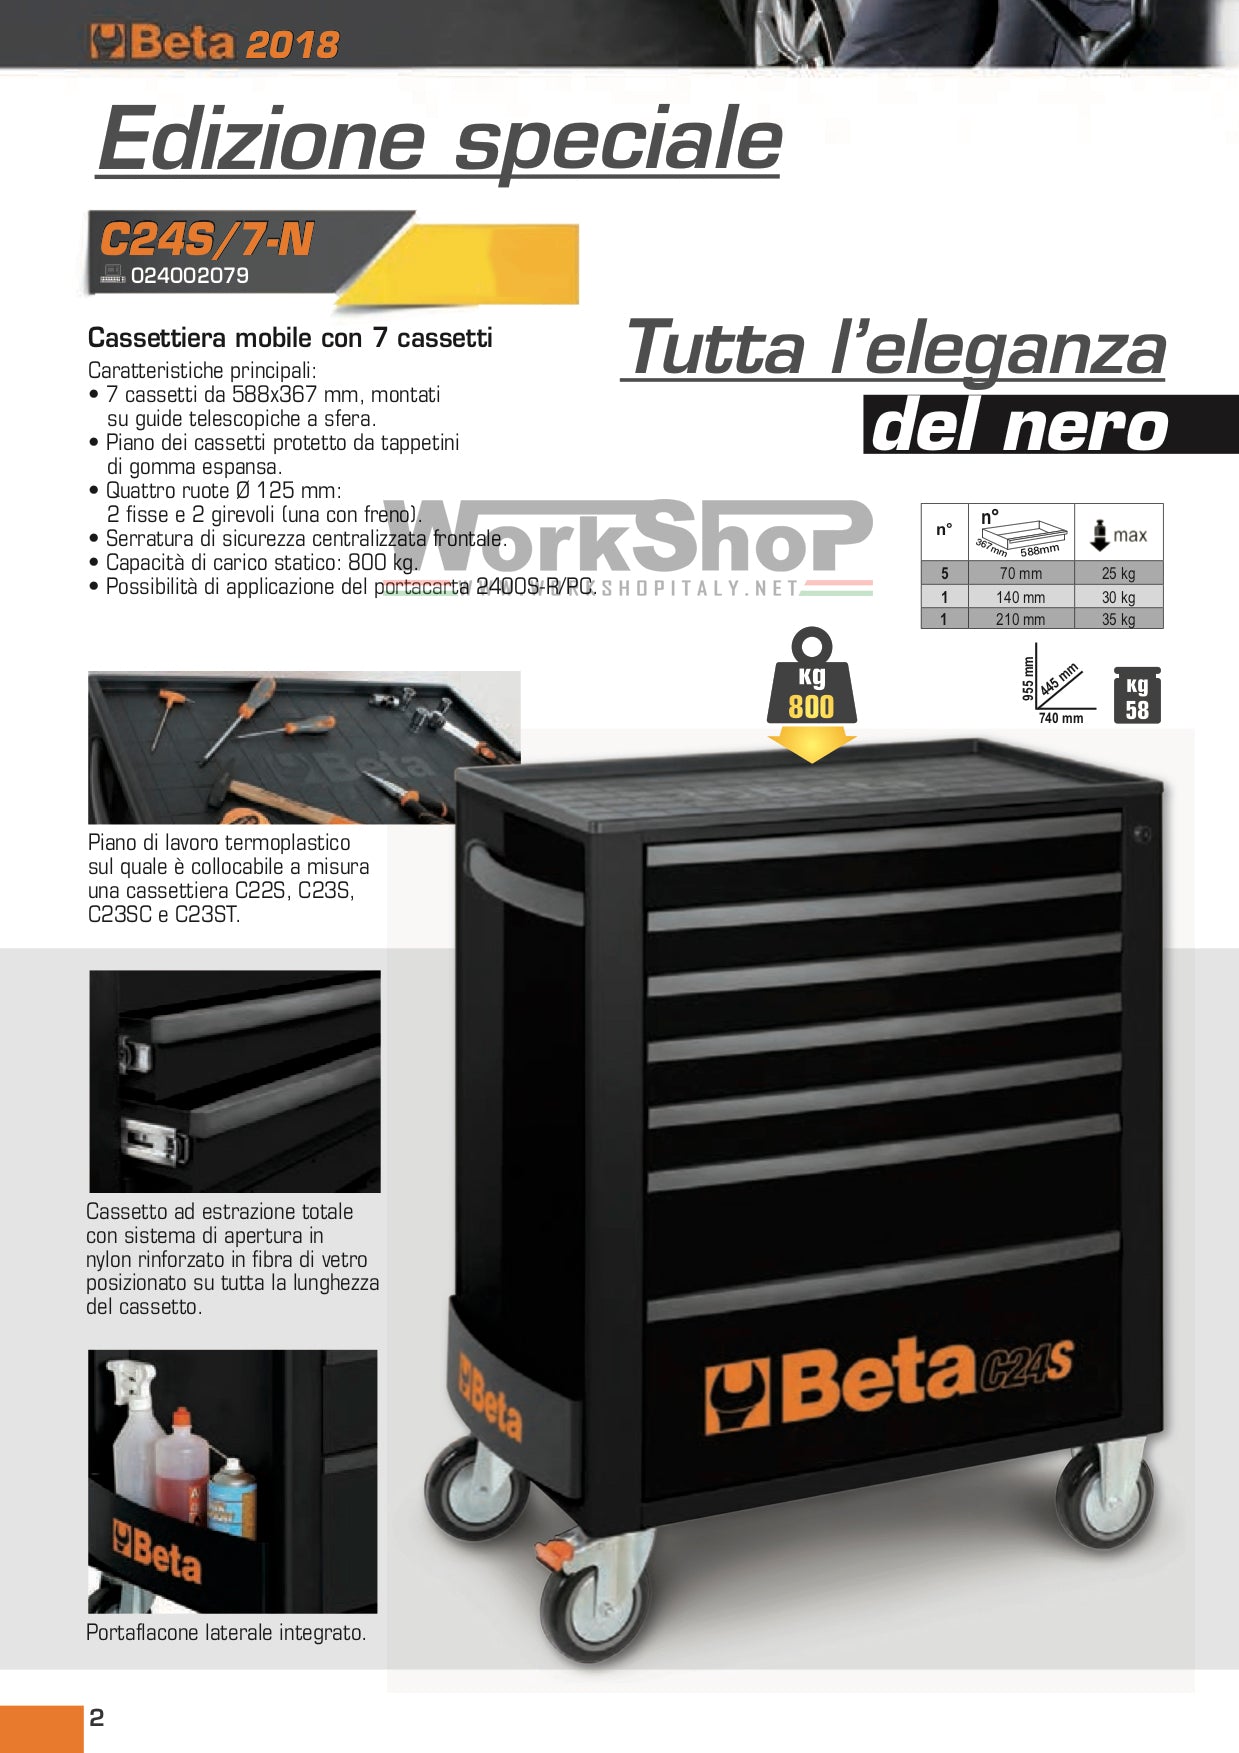 Carrello Beta C24S/7-N Nero limited edition 7 cassetti